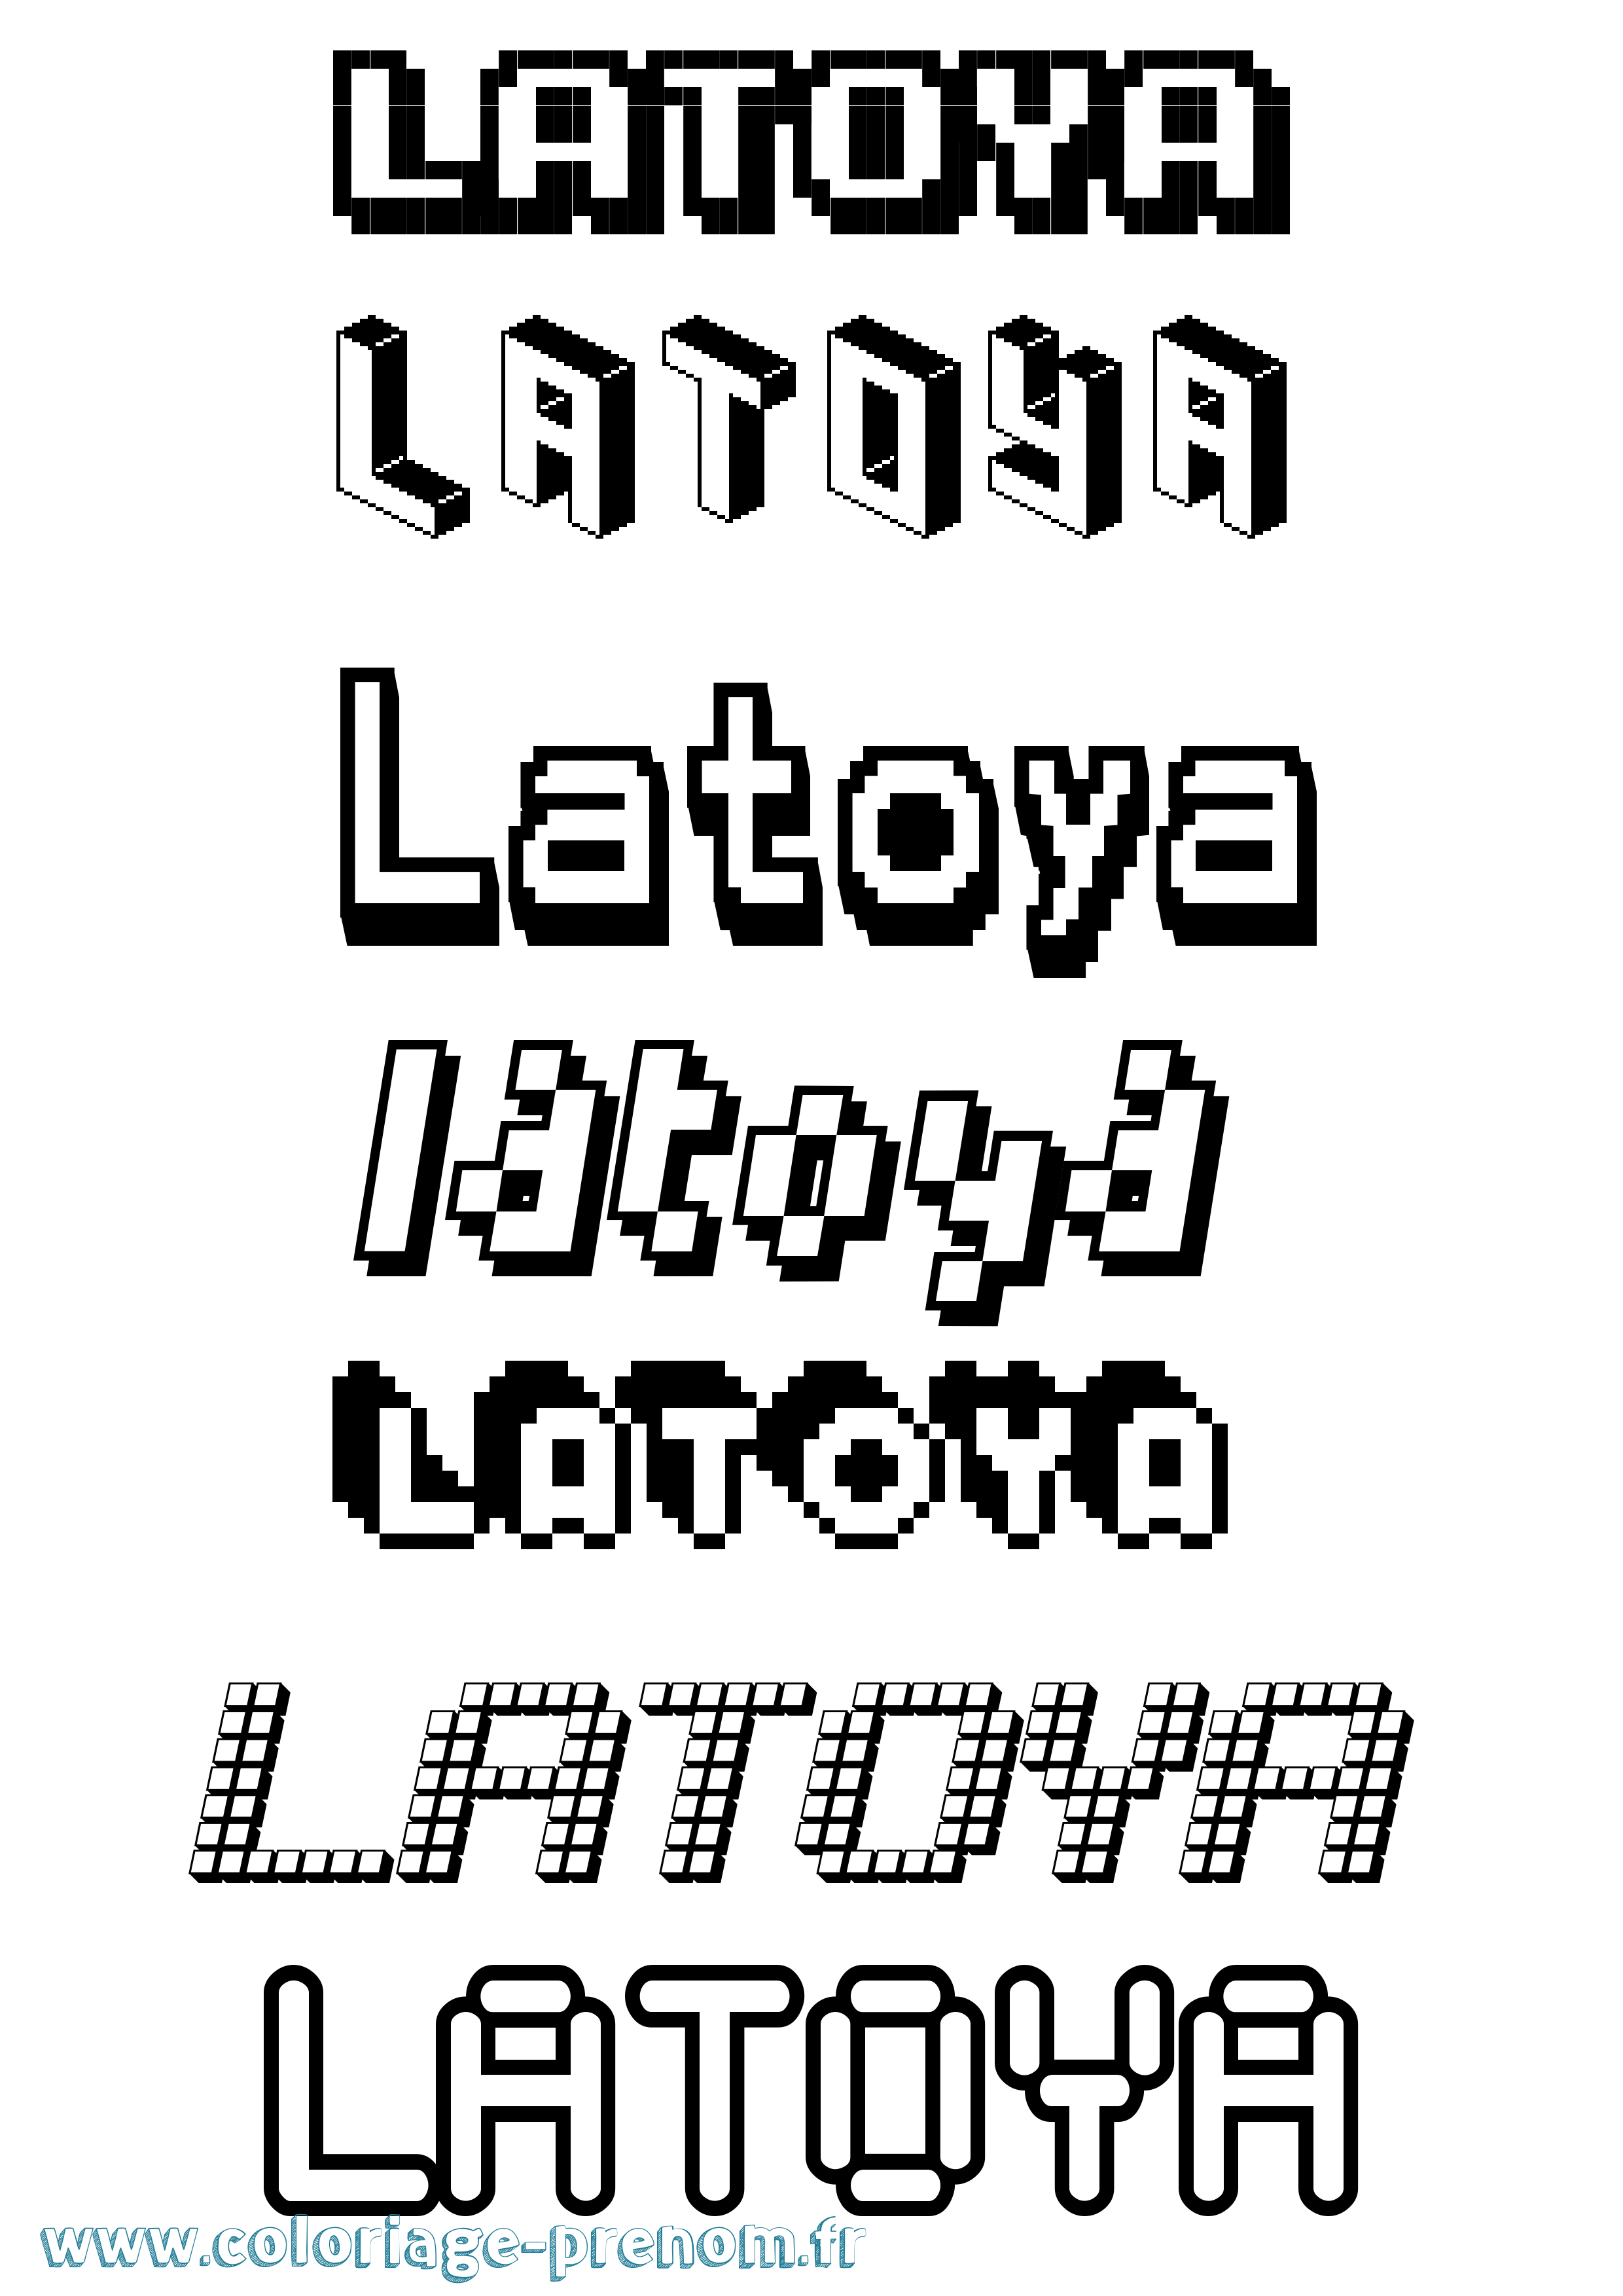 Coloriage prénom Latoya Pixel